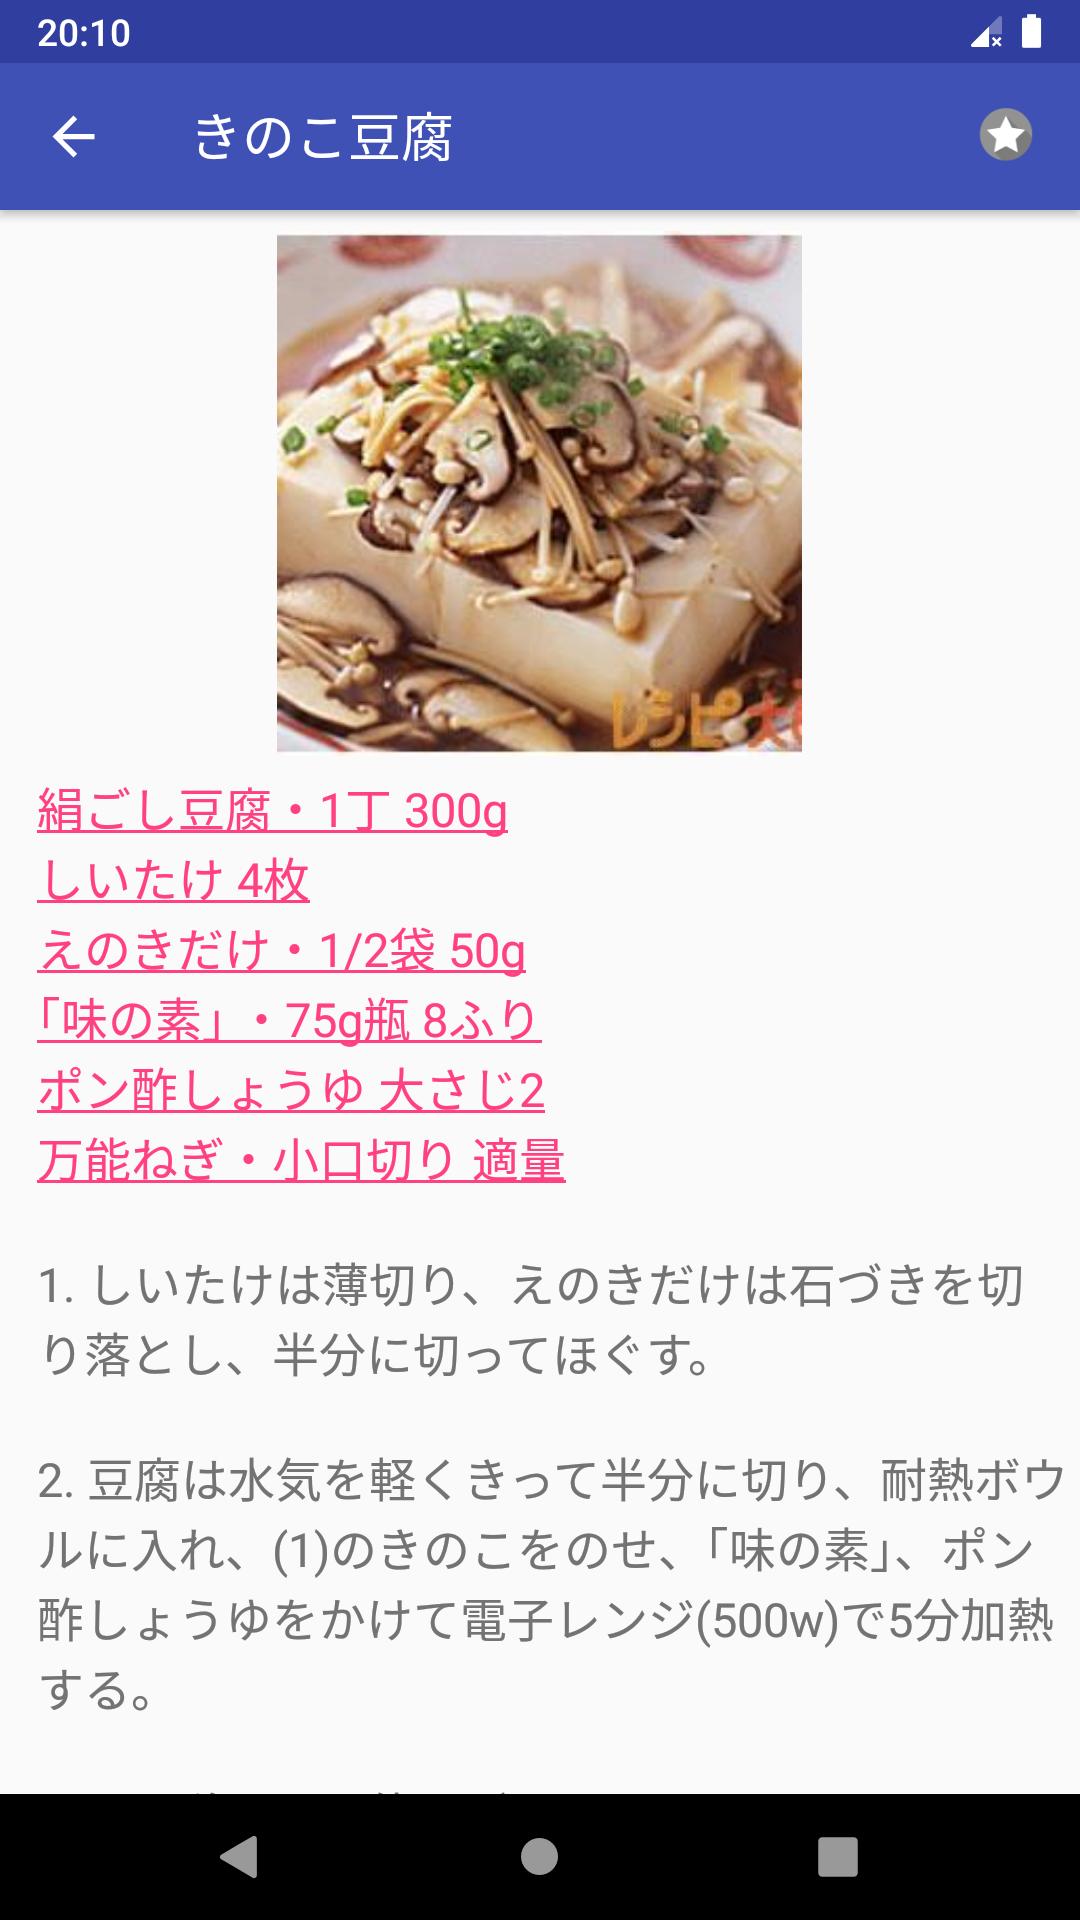 きのこのレシピアプリオフライン 日本料理レシピ For Android Apk Download